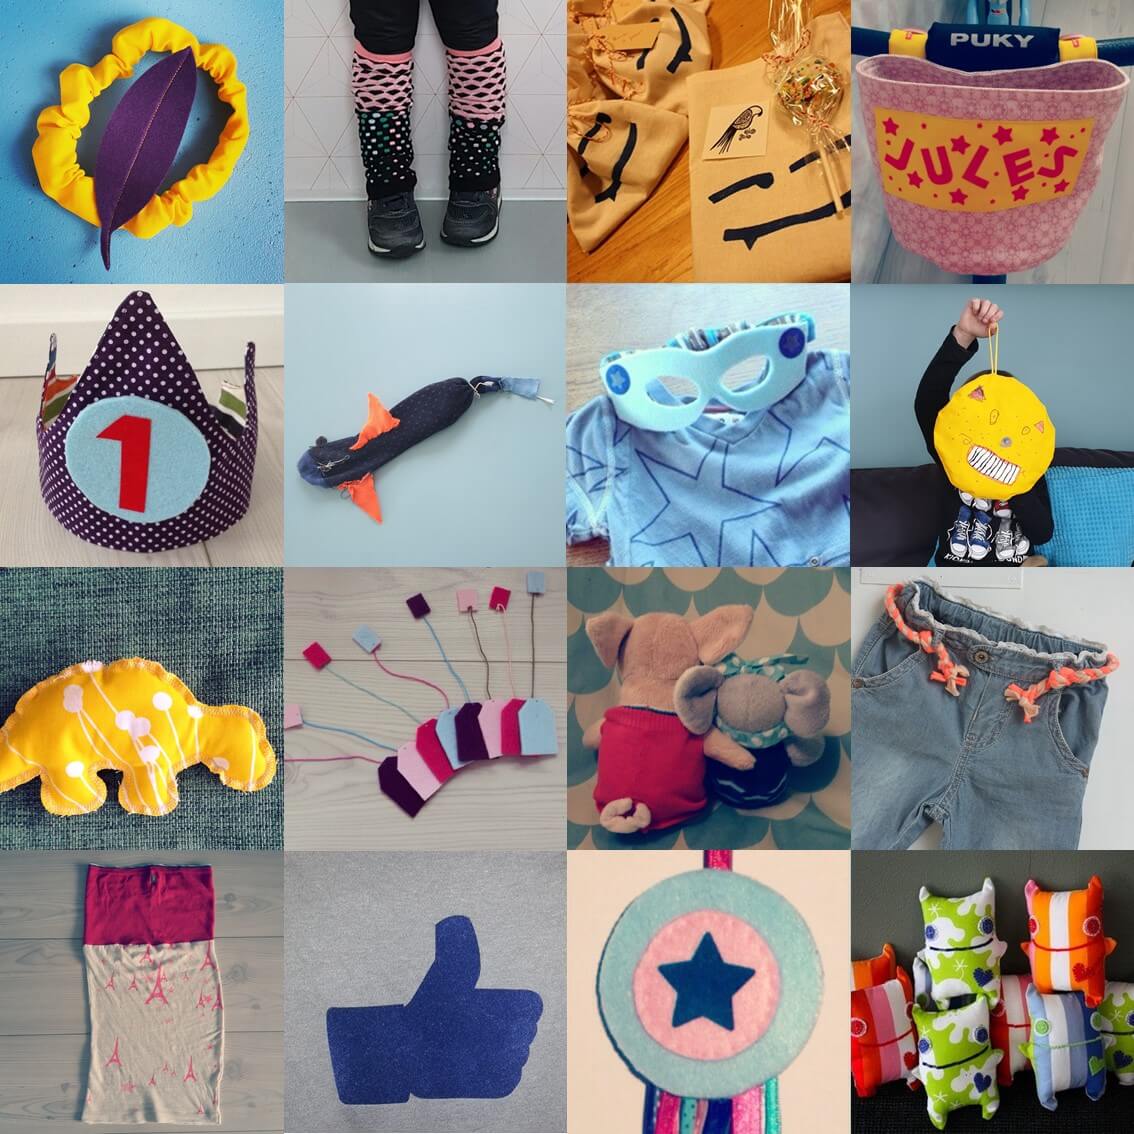 Handwerken voor jonge kinderen: 101 ideeën om te naaien en borduren voor jongens en meisjes